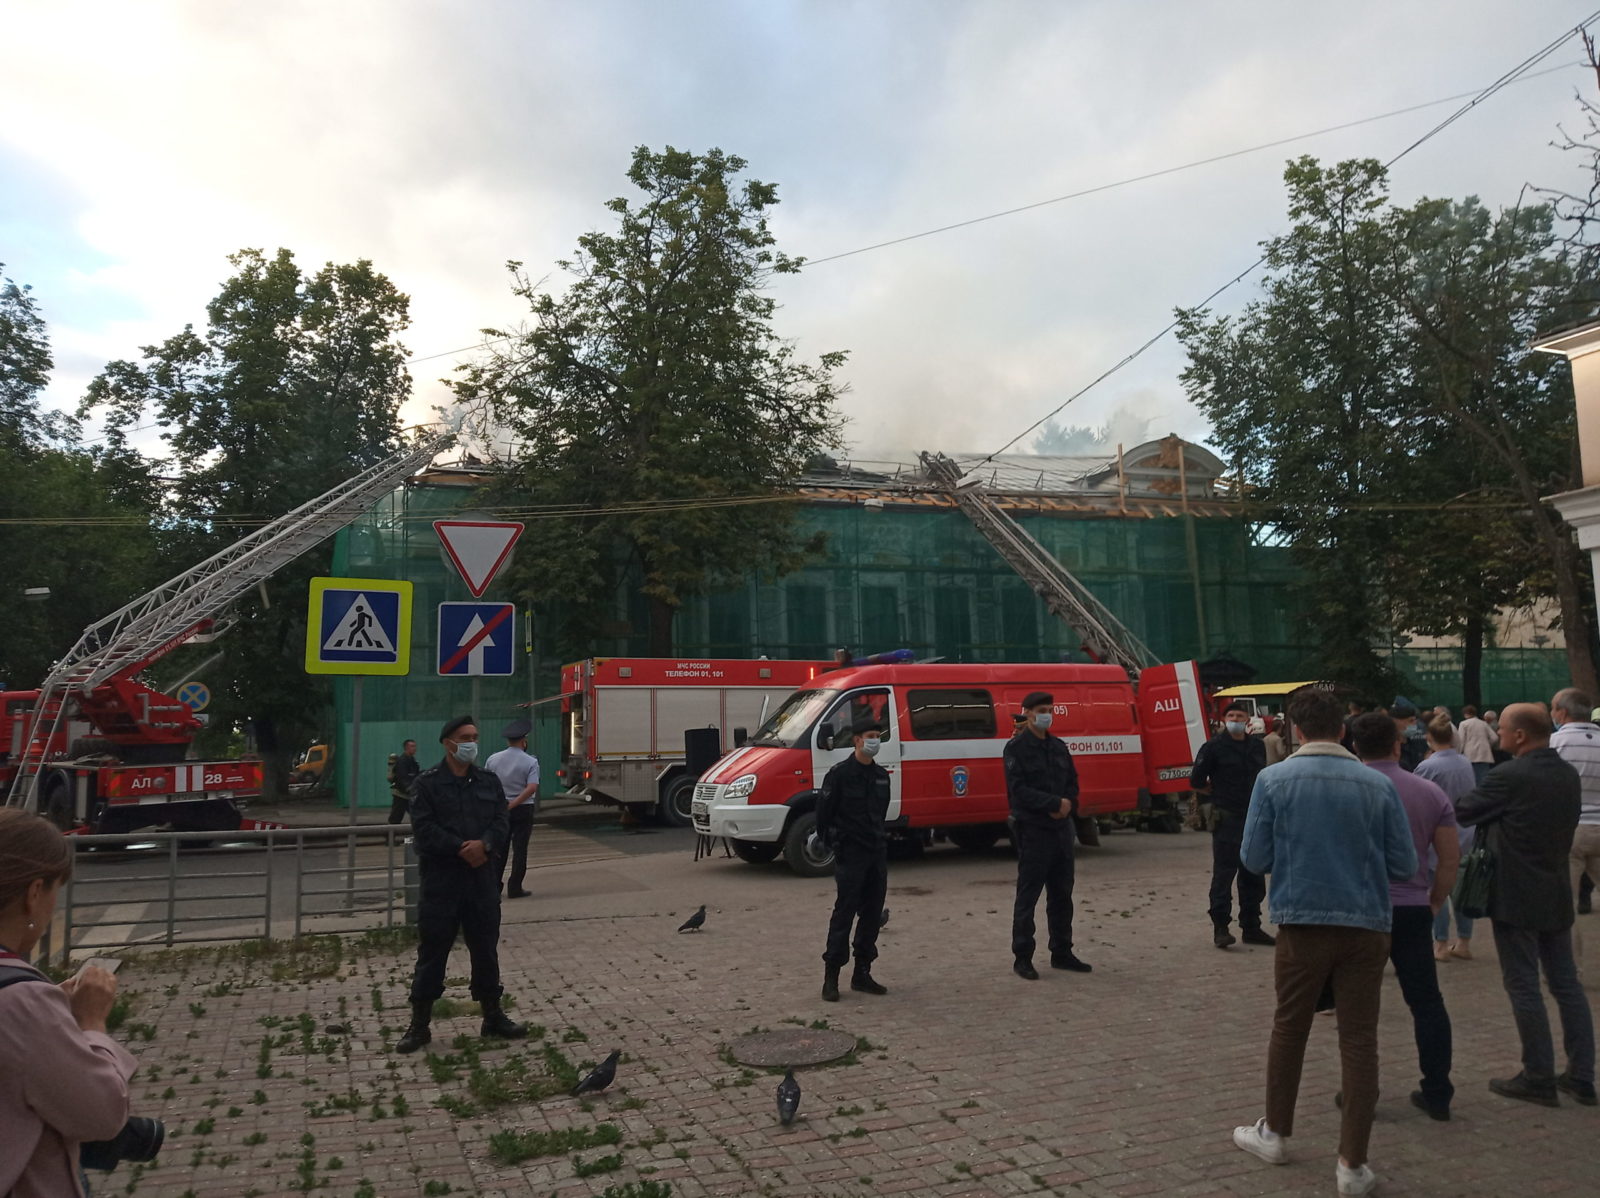 25 июня 2020 г. в Литературном музее М. Горького (ул. Минина, 26) произошел пожар